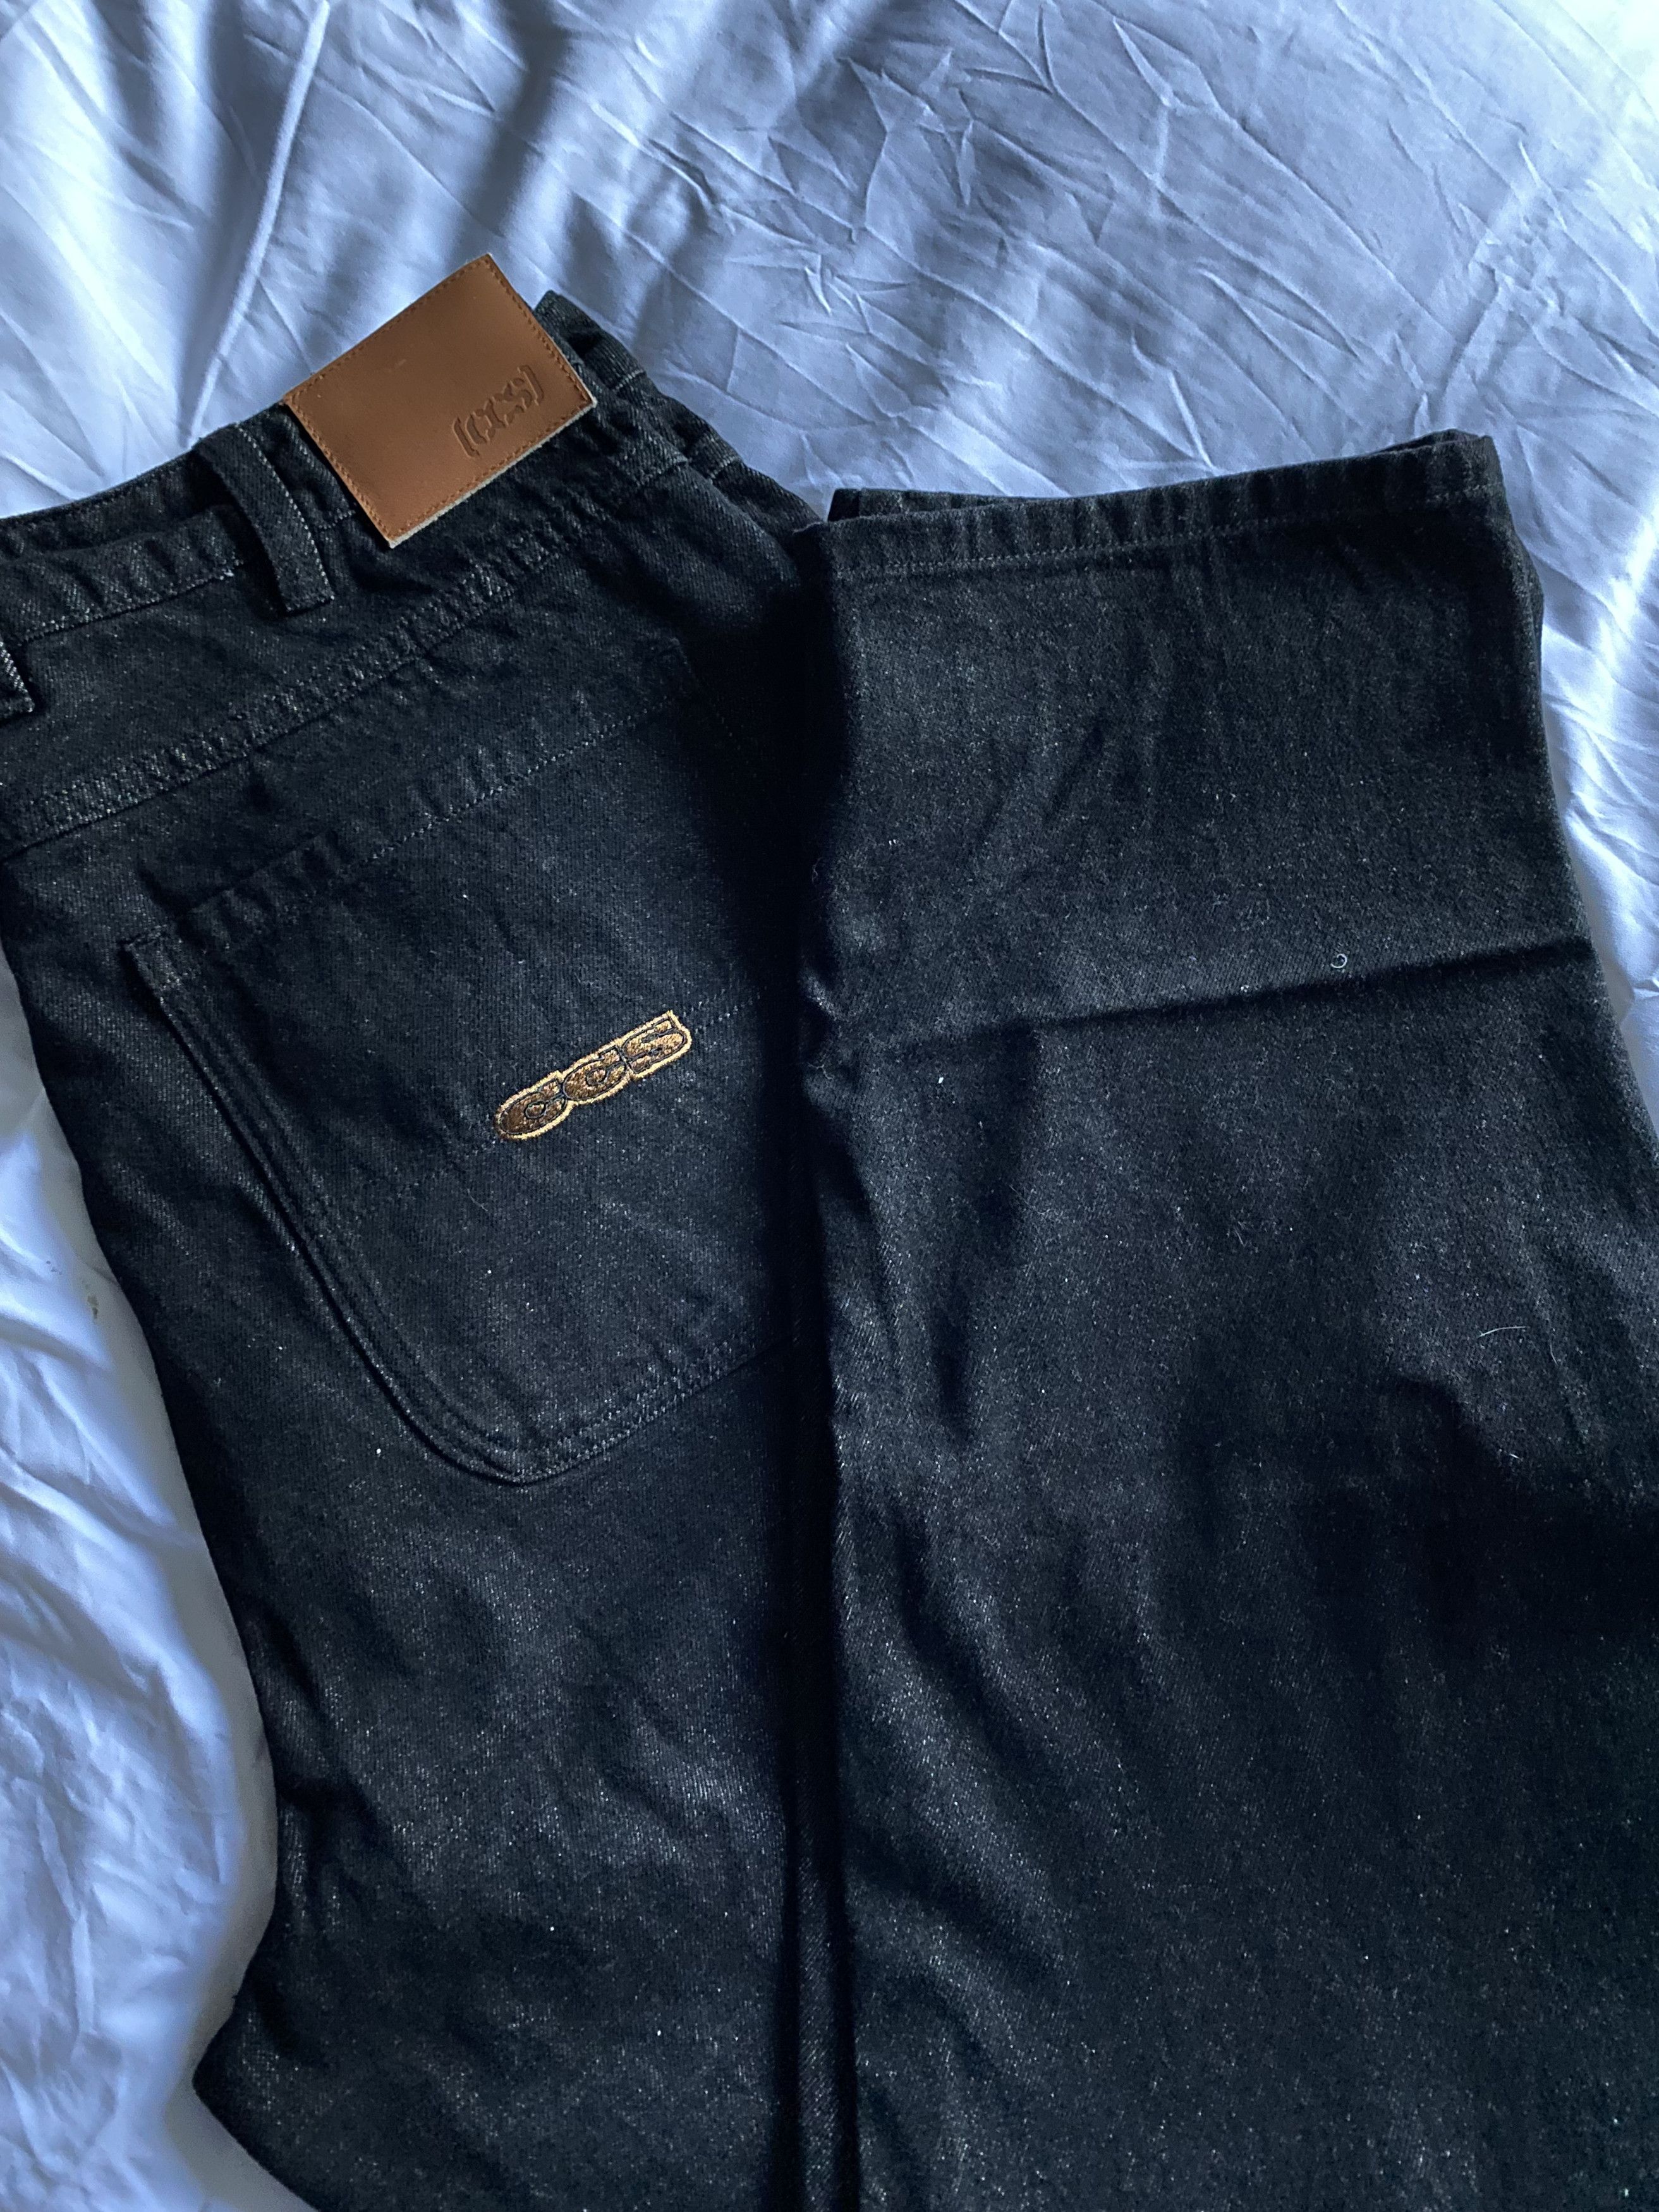 Ccs CCS Baggy Taper Black Jeans 34/32 | Grailed